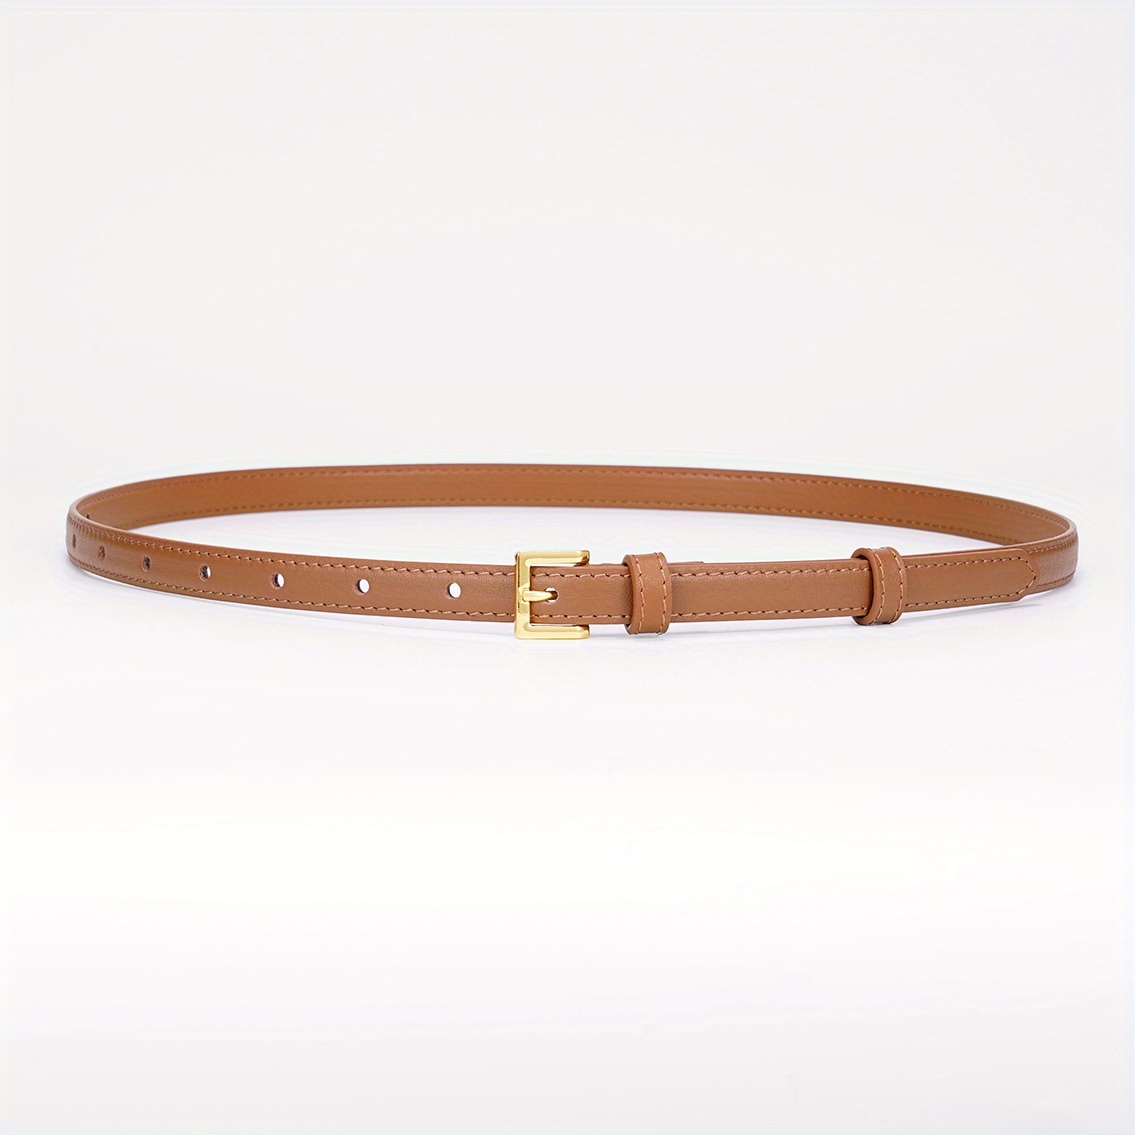 58 Hermes Belts ideas  hermes belt, hermes, fashion